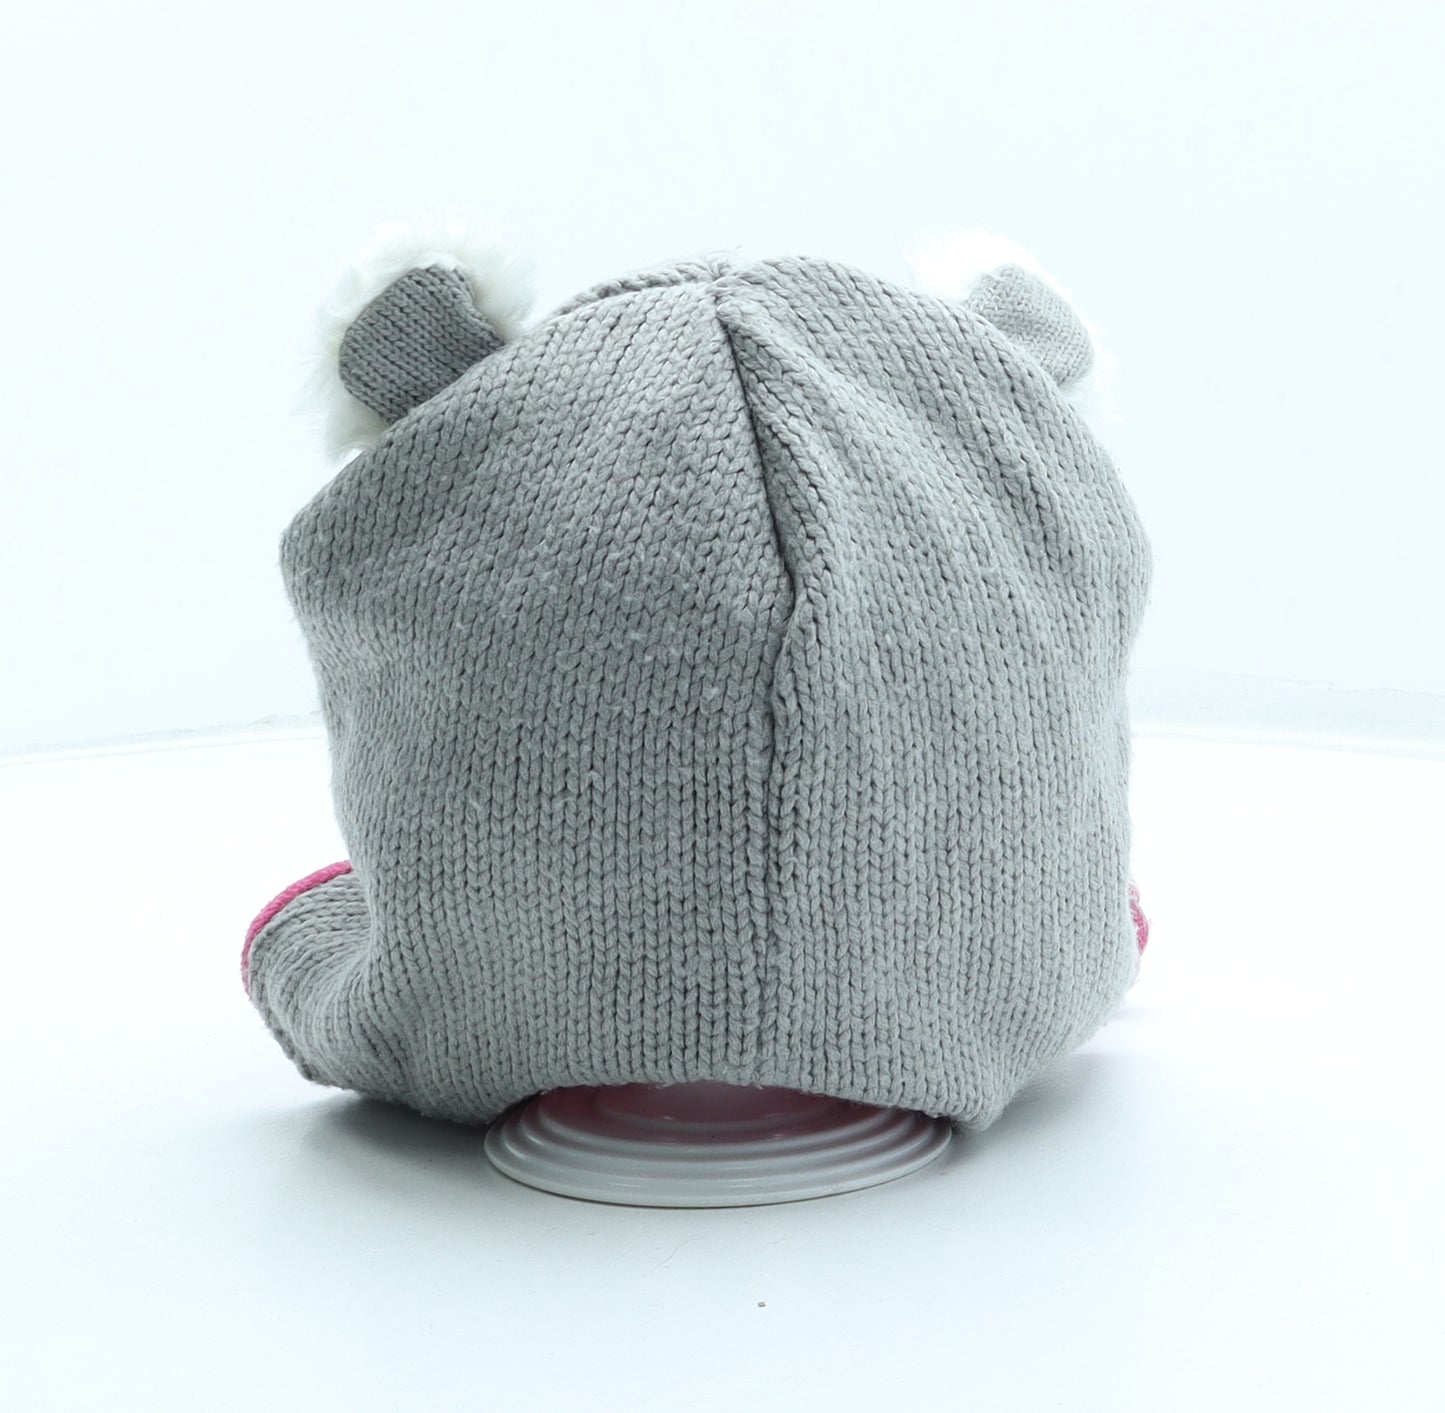 Preworn Girls Grey Acrylic Bobble Hat One Size - Koala Ears Pom Pom